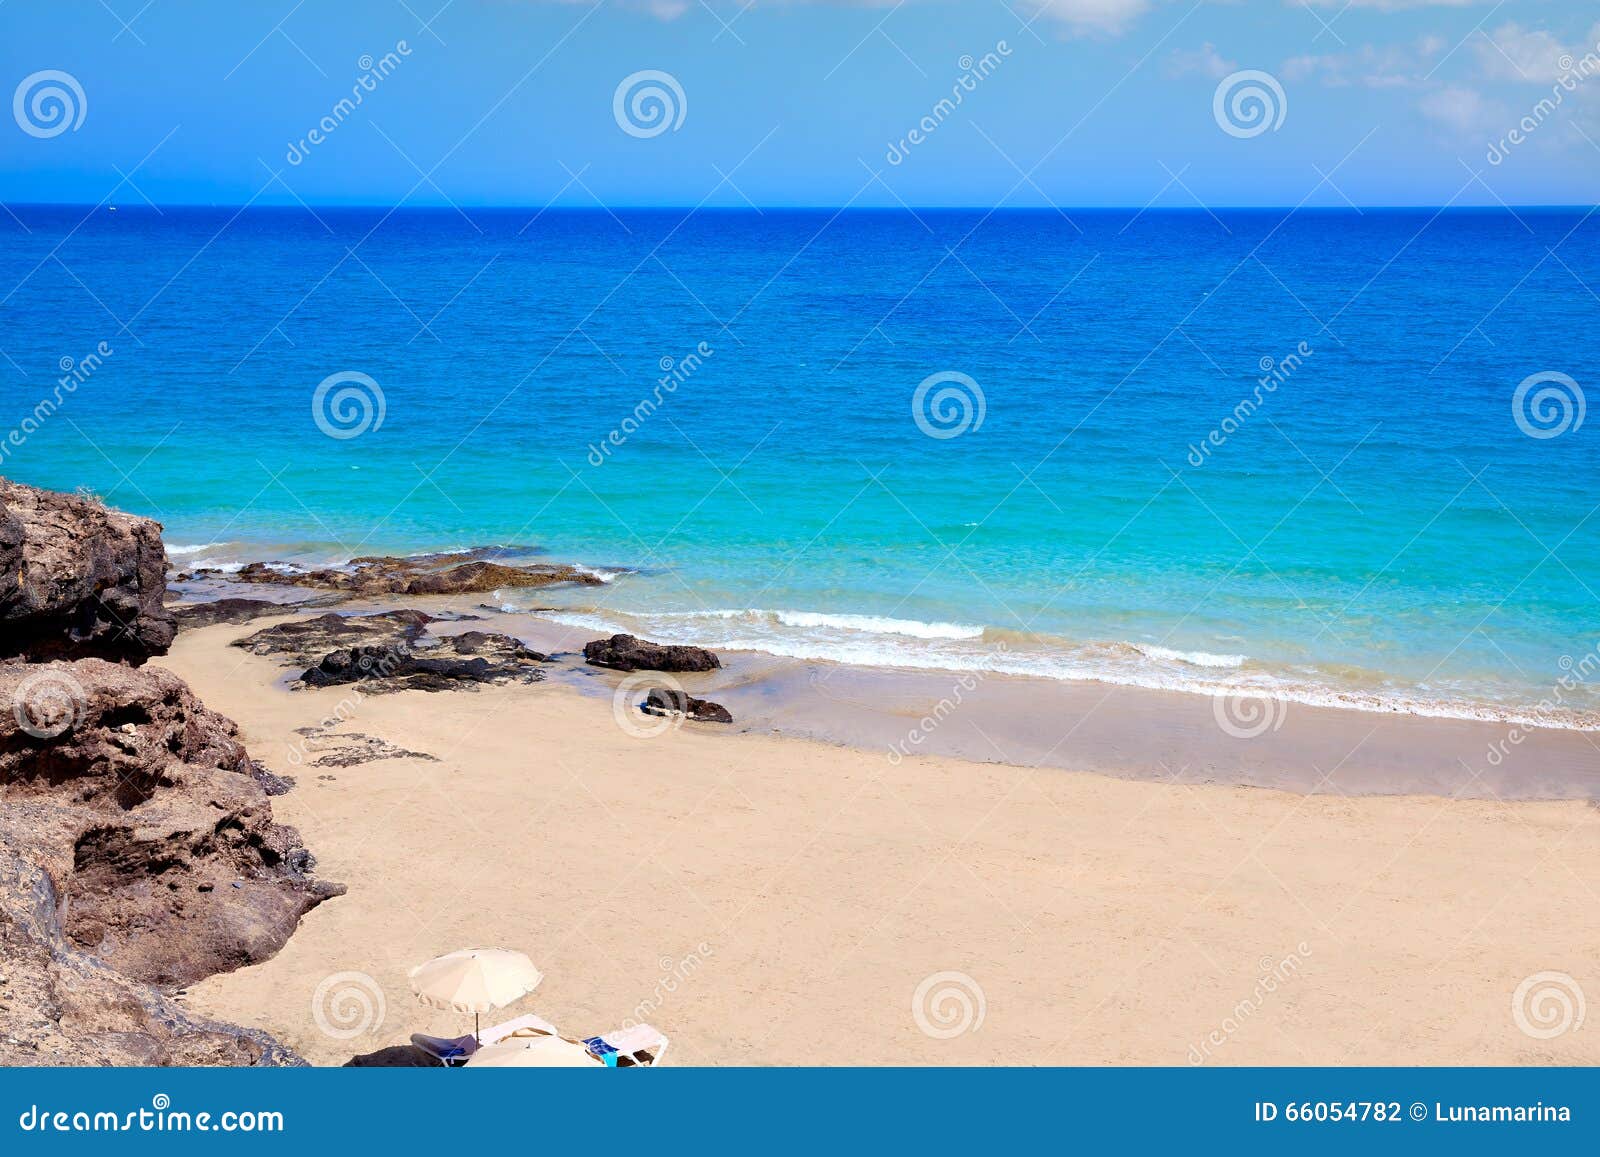 costa calma beach of jandia fuerteventura